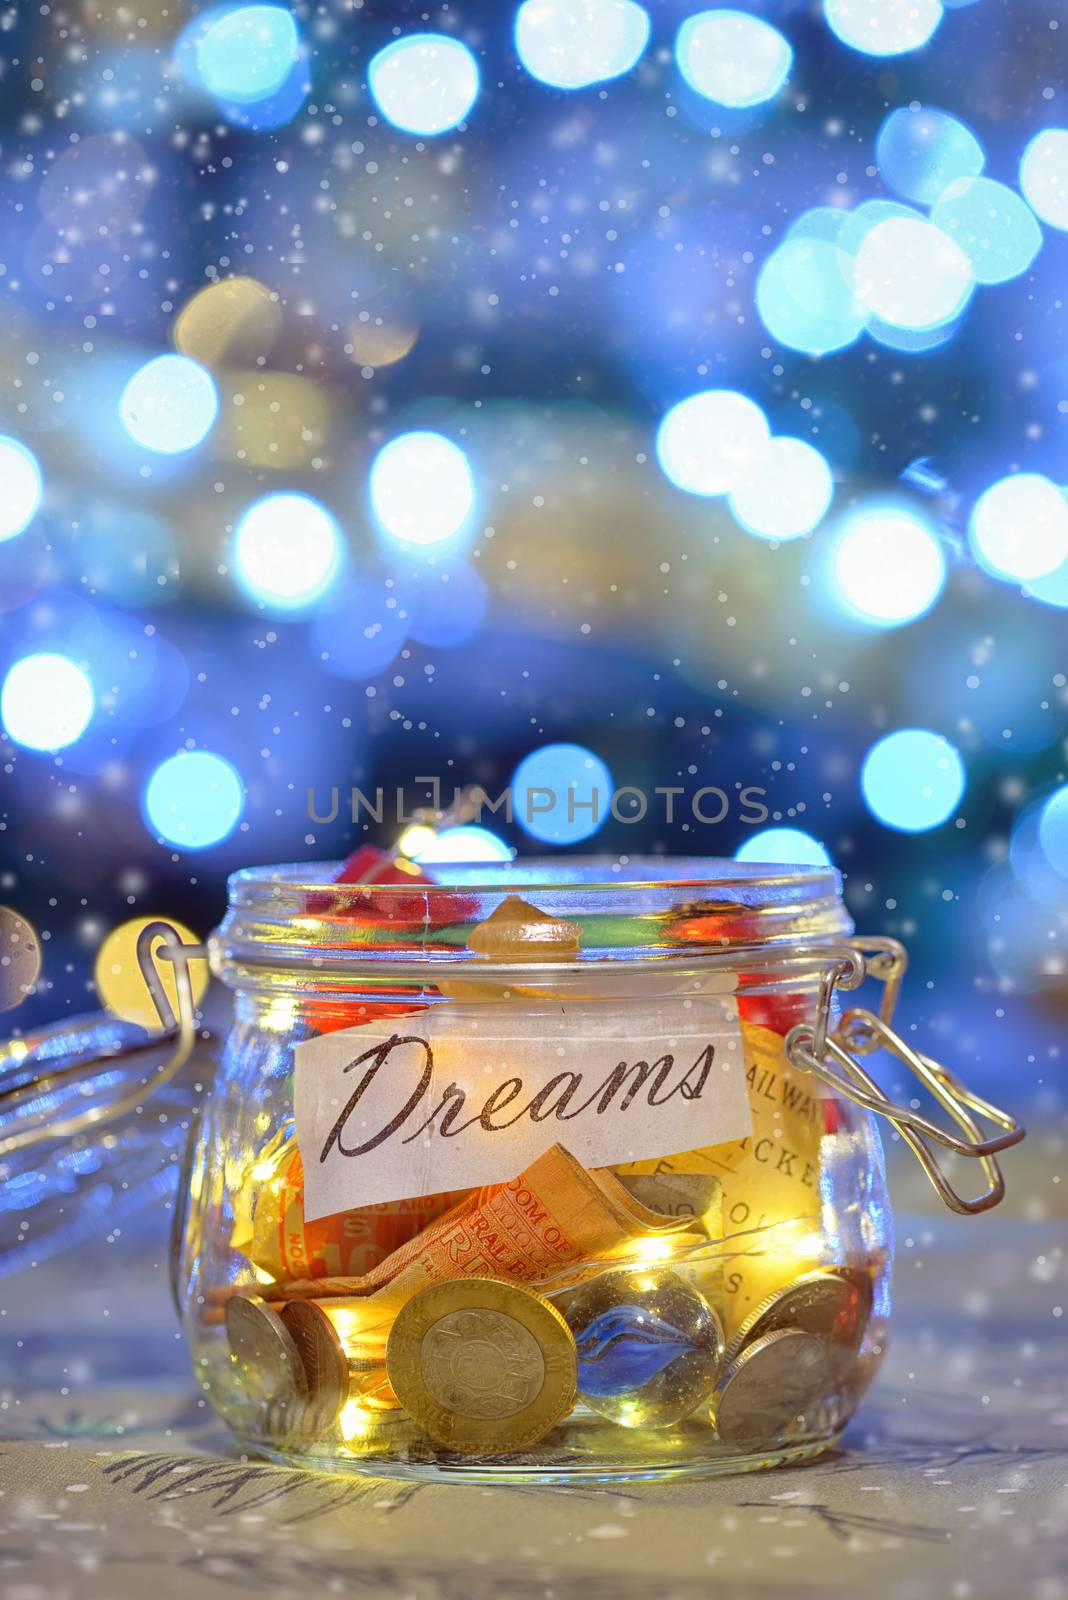 Big dreams saving money jars and lights